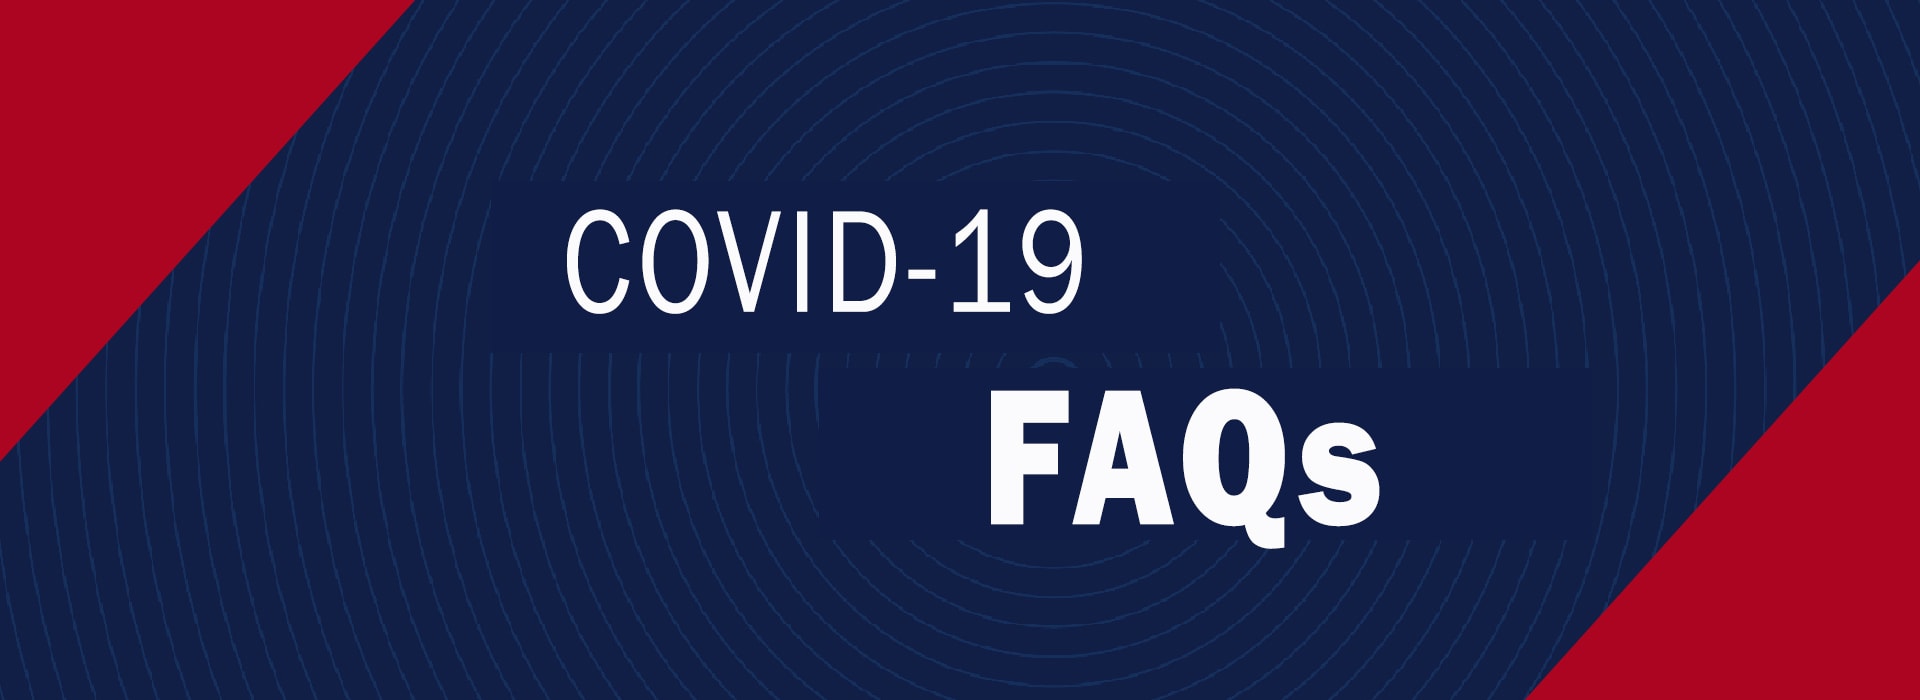 Covid 19 FAQs